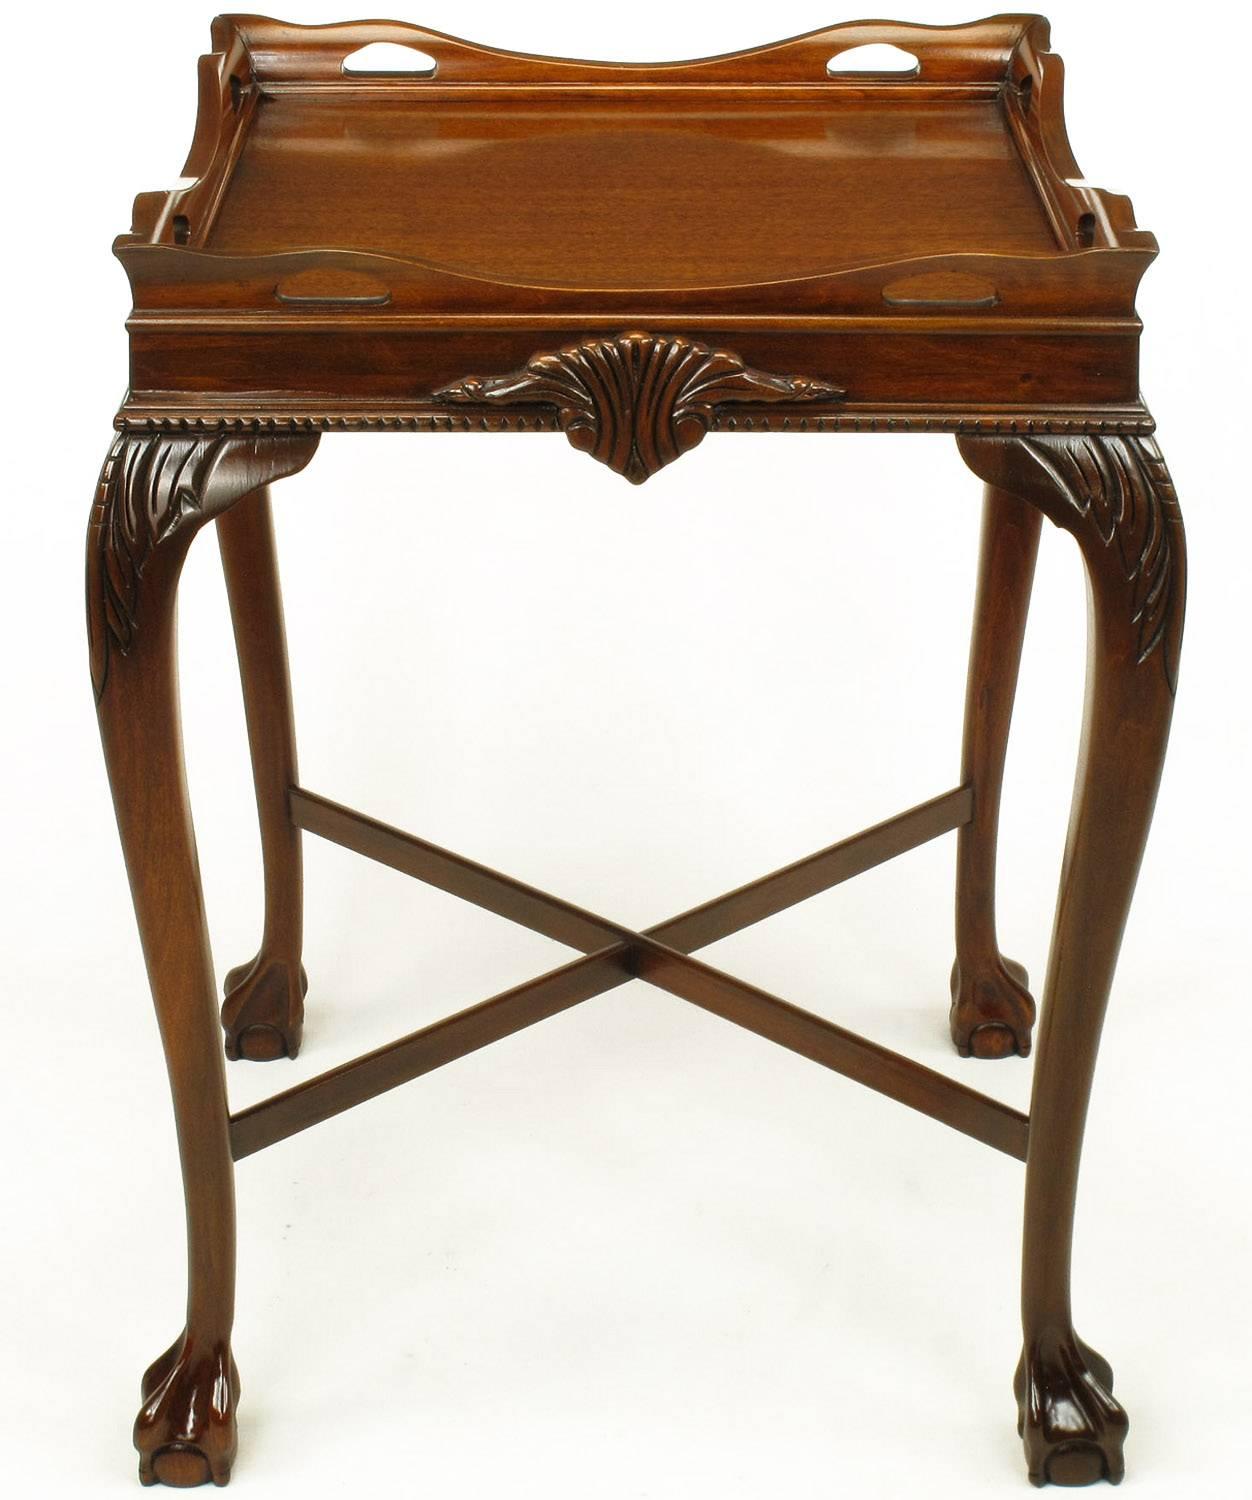 Fachmännisch geschnitzte Tische aus Mahagoni mit Kugel- und Klauenfüßen im Stil von George ll.
Kabriolettbeine, durchbrochene Mahagoni-Galerie, X-Streben und geschnitzter Front- und Rückgiebel.